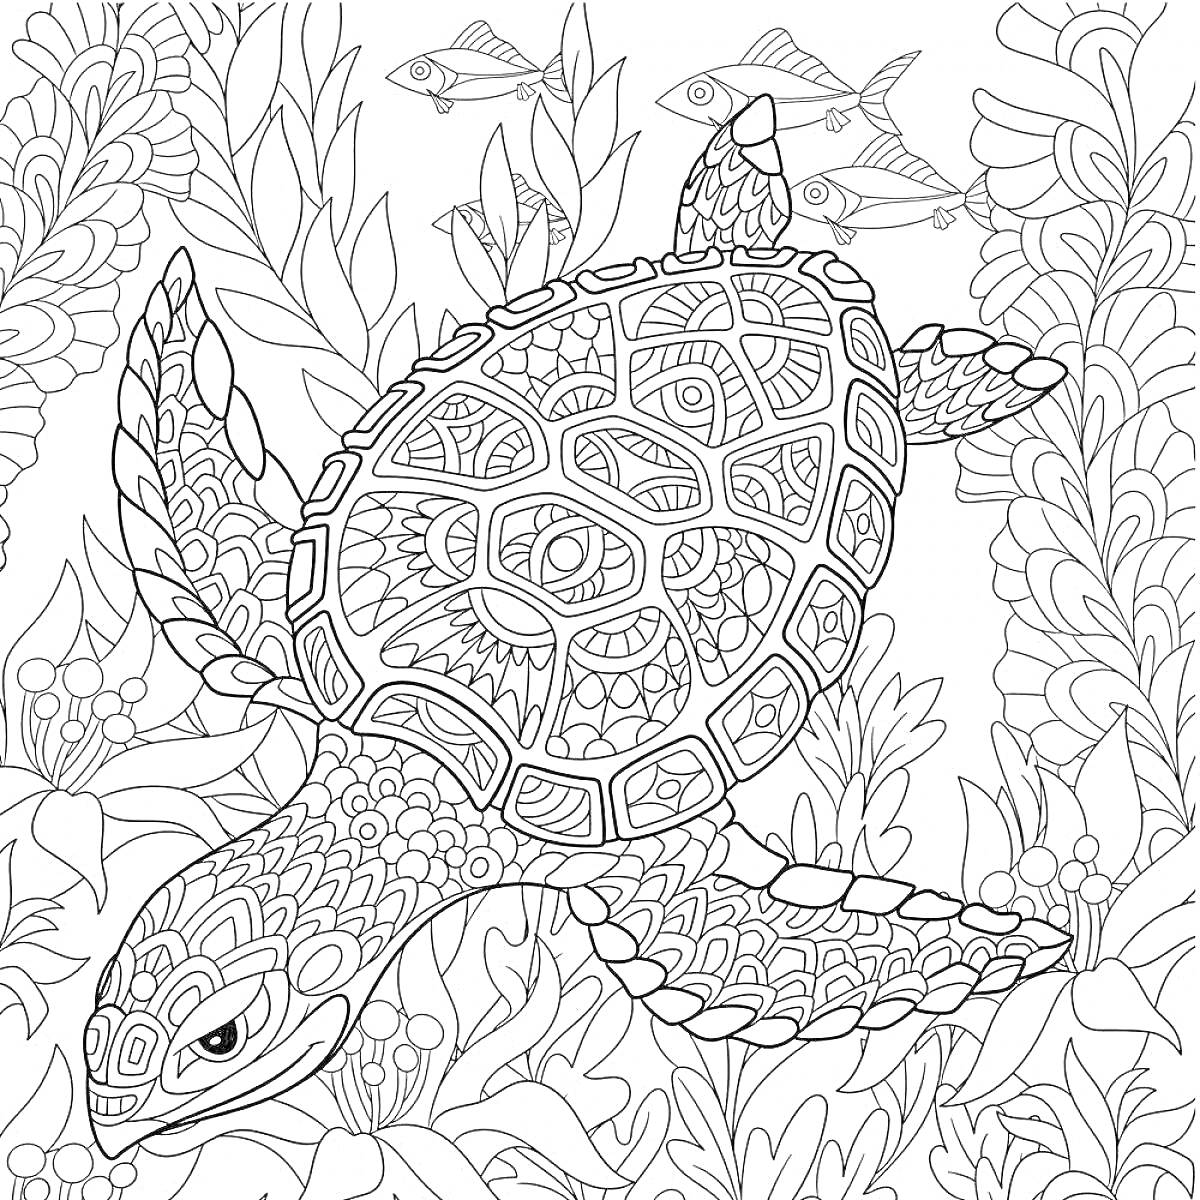 Раскраска Антистресс черепаха с узорами среди подводных растений и рыб